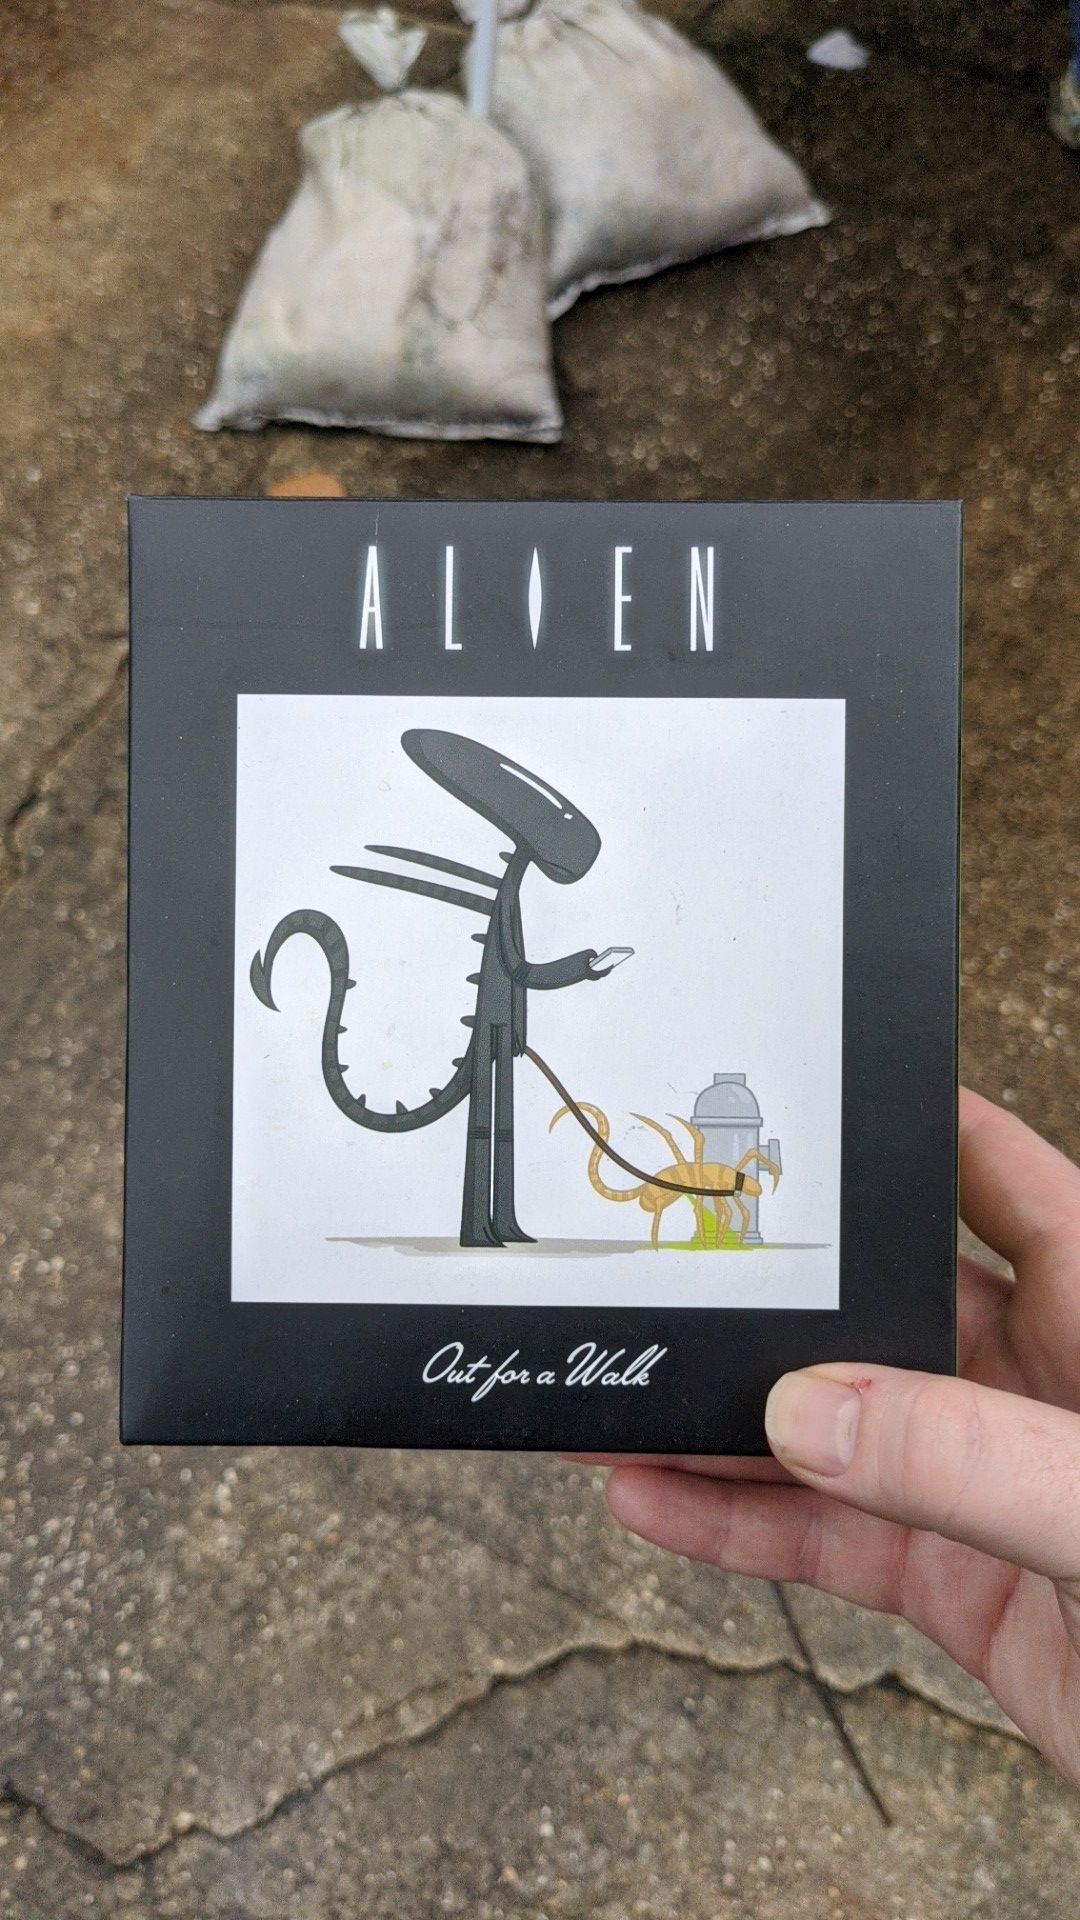 Alien statue